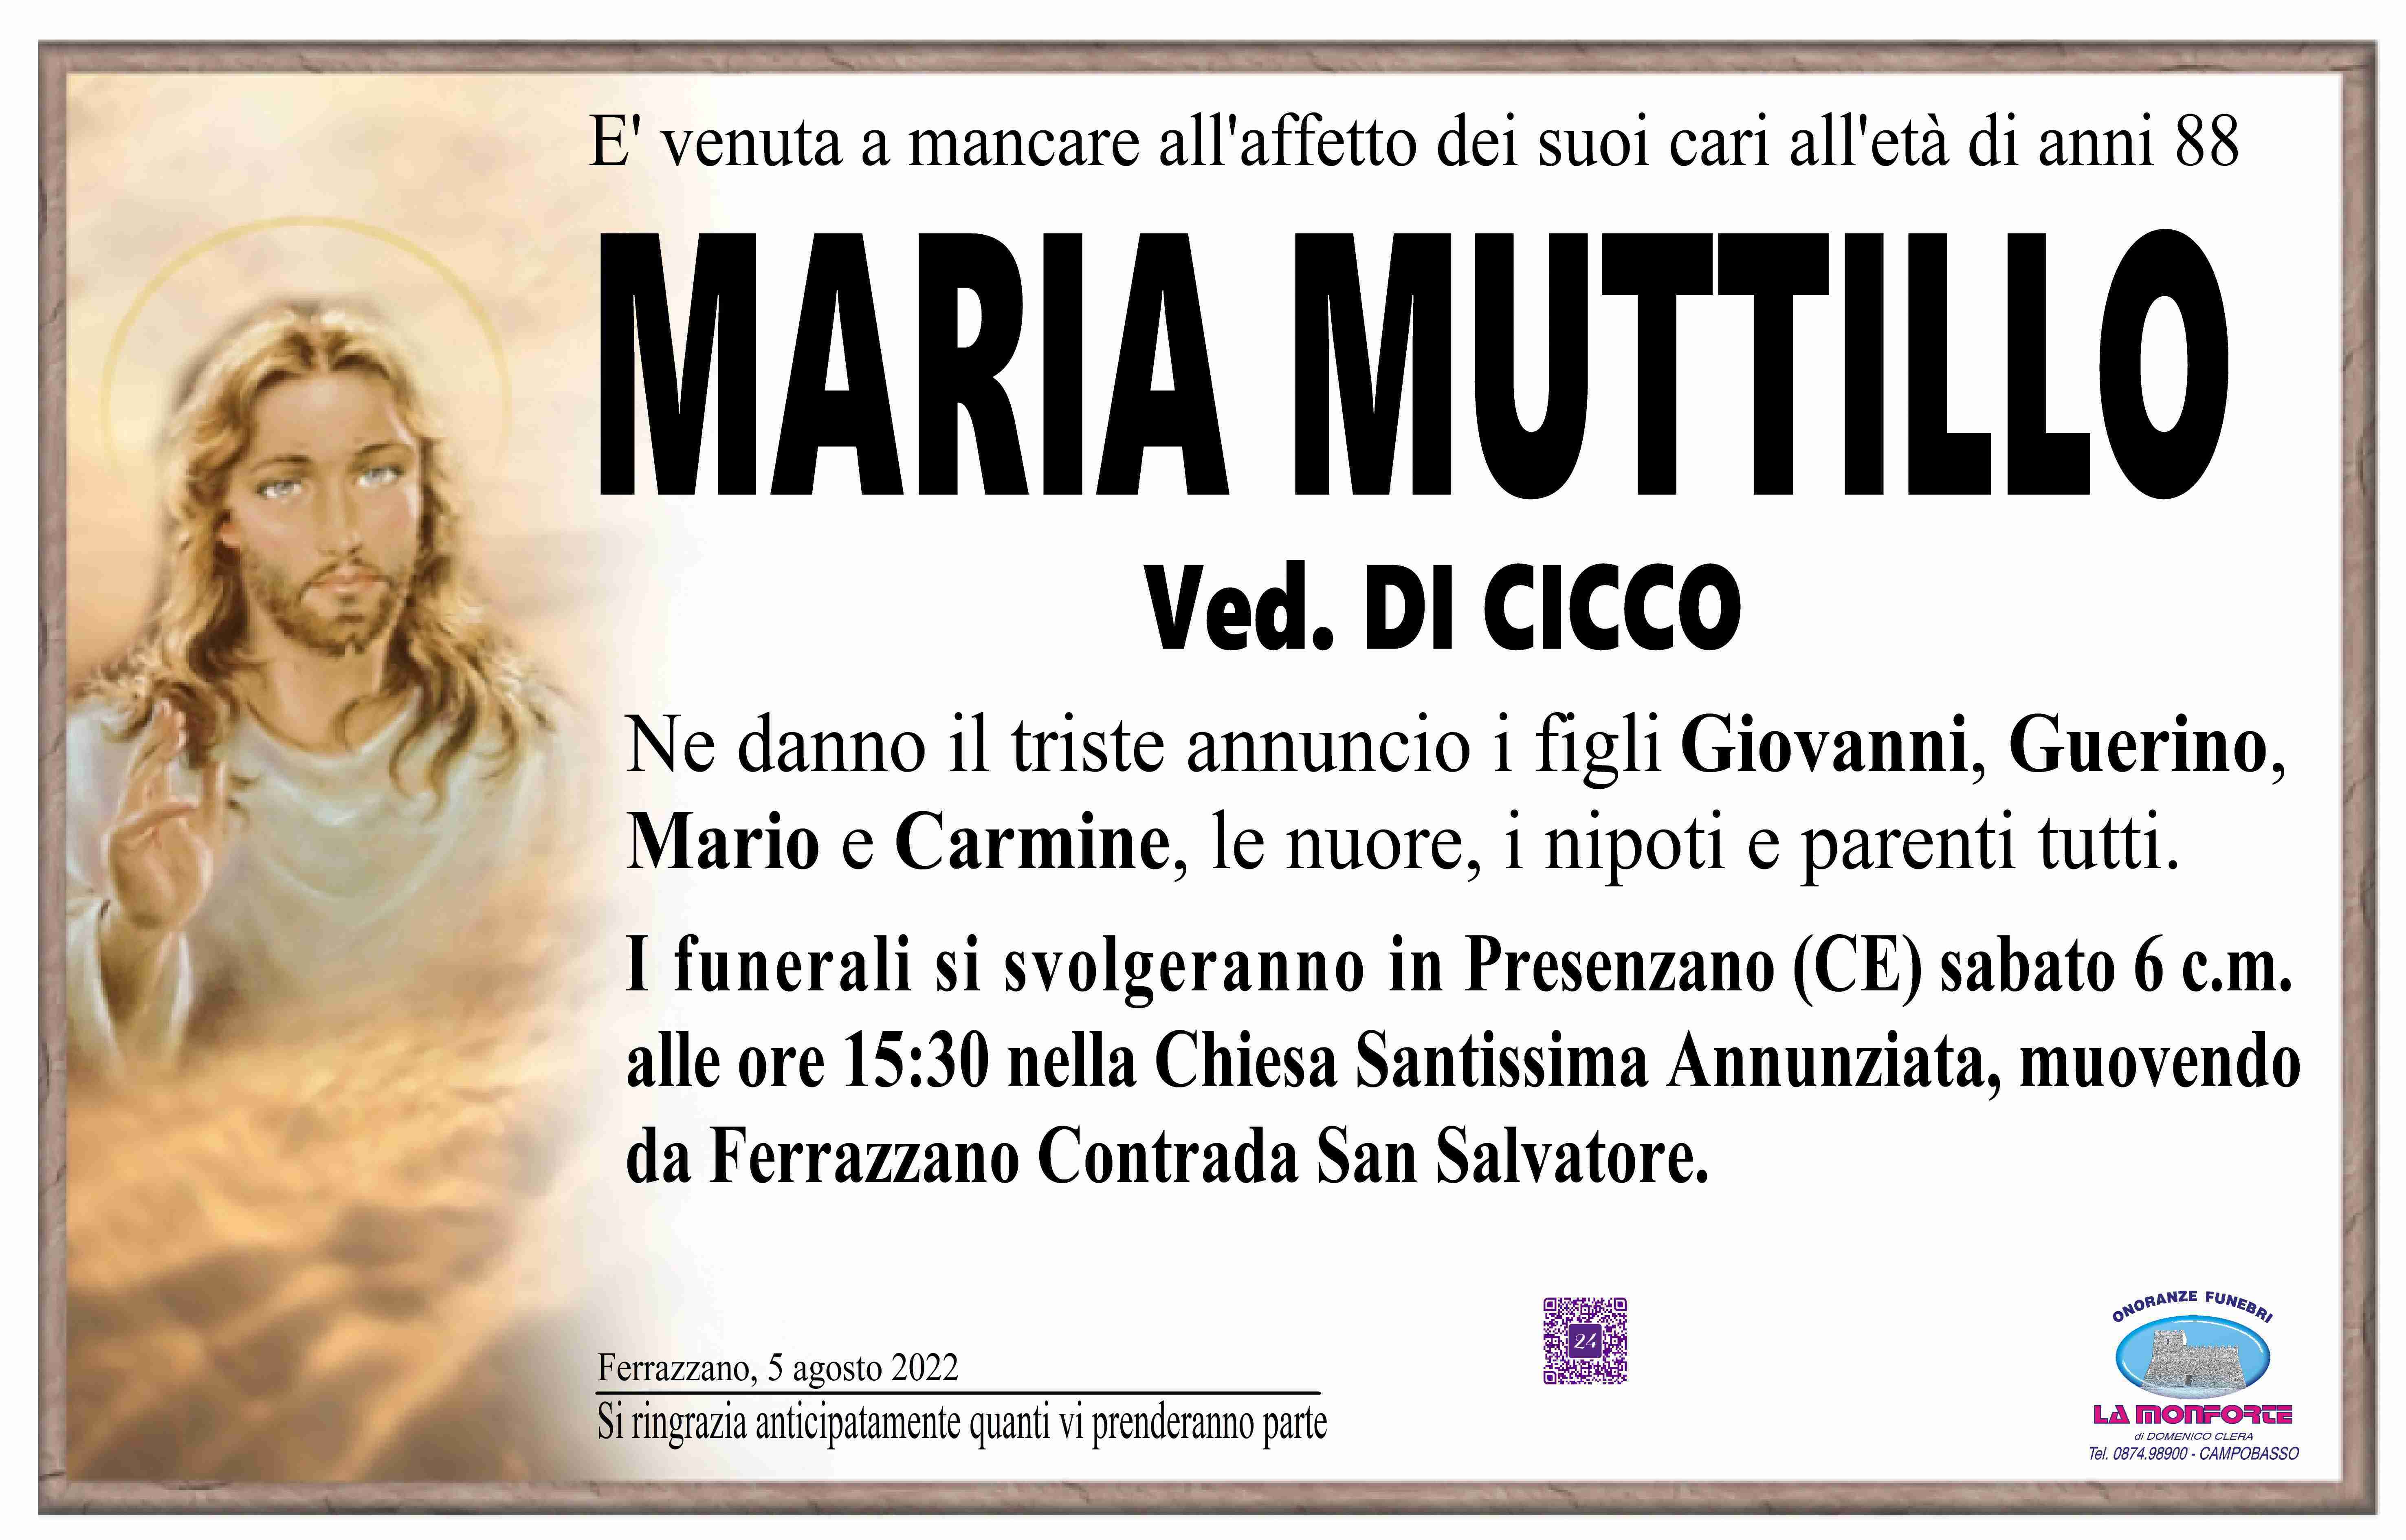 Maria Muttillo